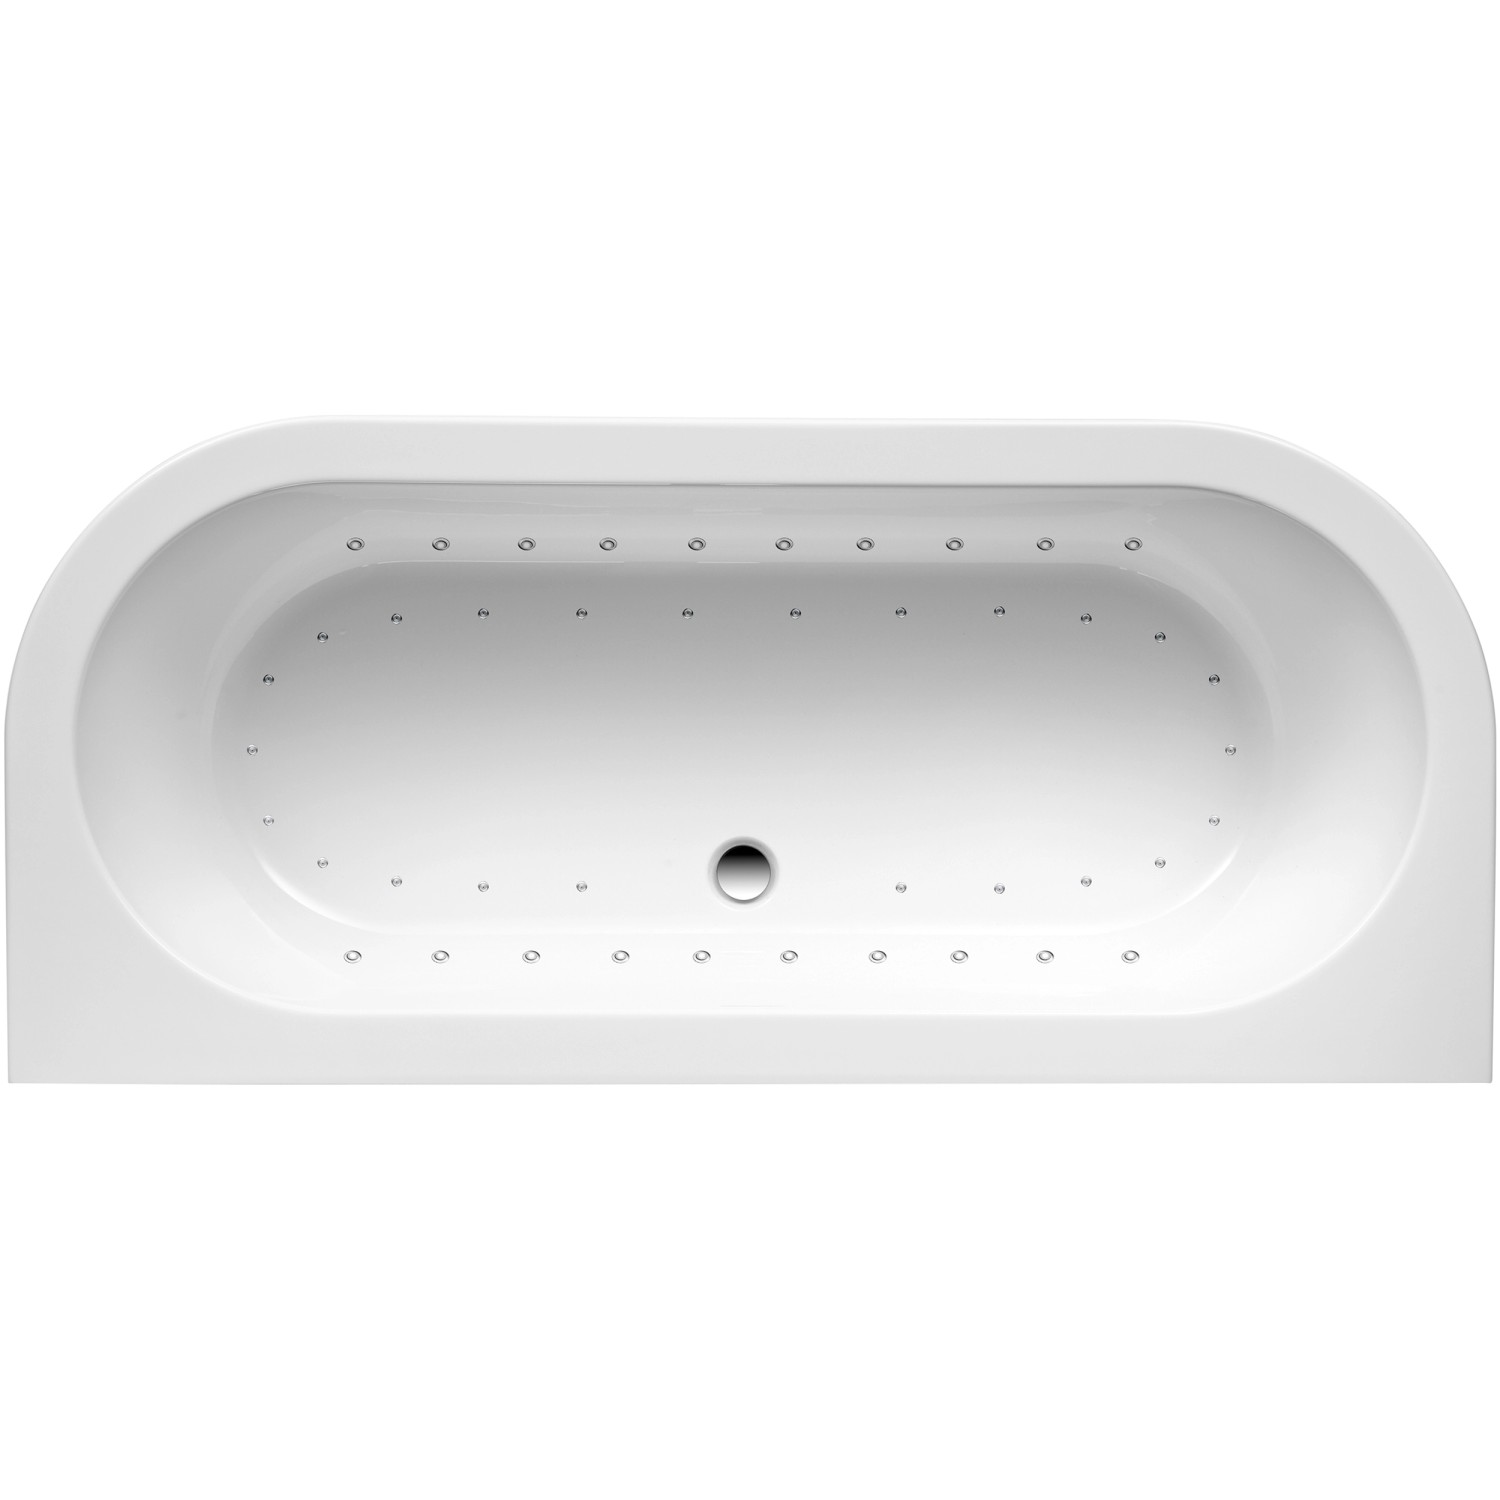 Ottofond Whirlpool Modena Komfort-Light-/Silentsystem 180 cm x 79 cm Weiß von Ottofond